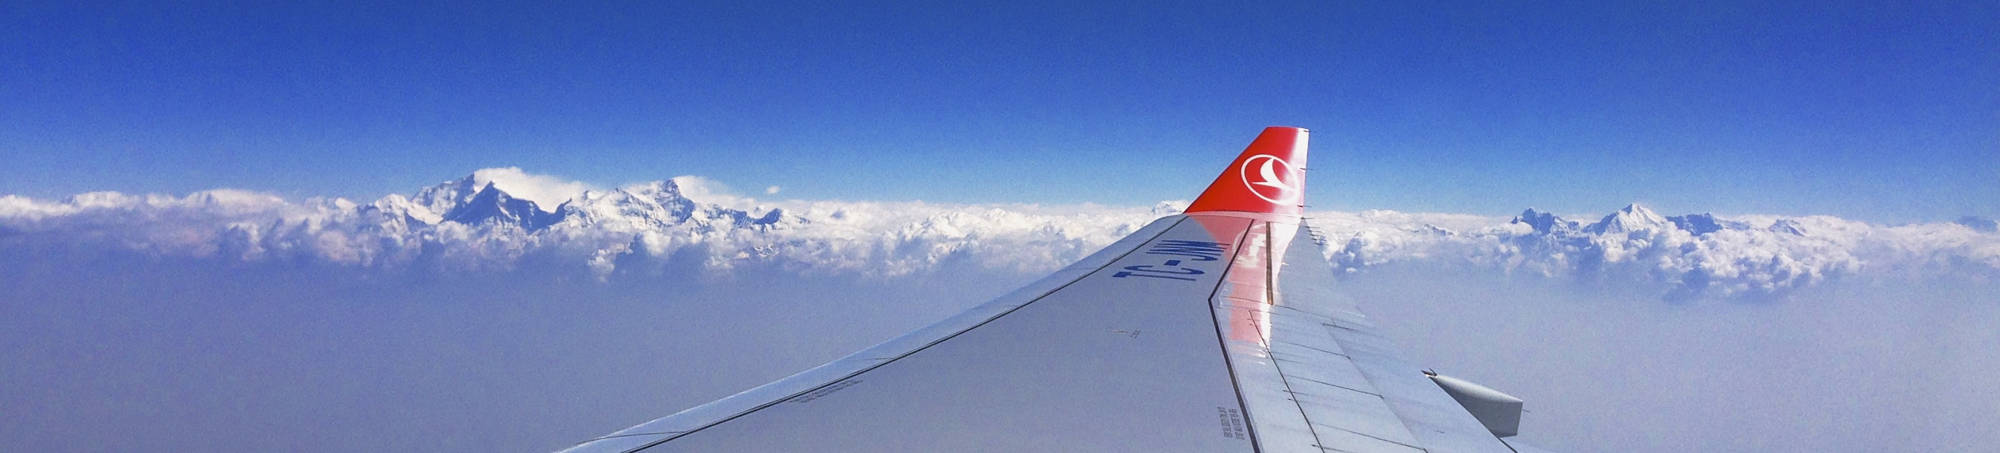 Nepal vliegtuig 2000